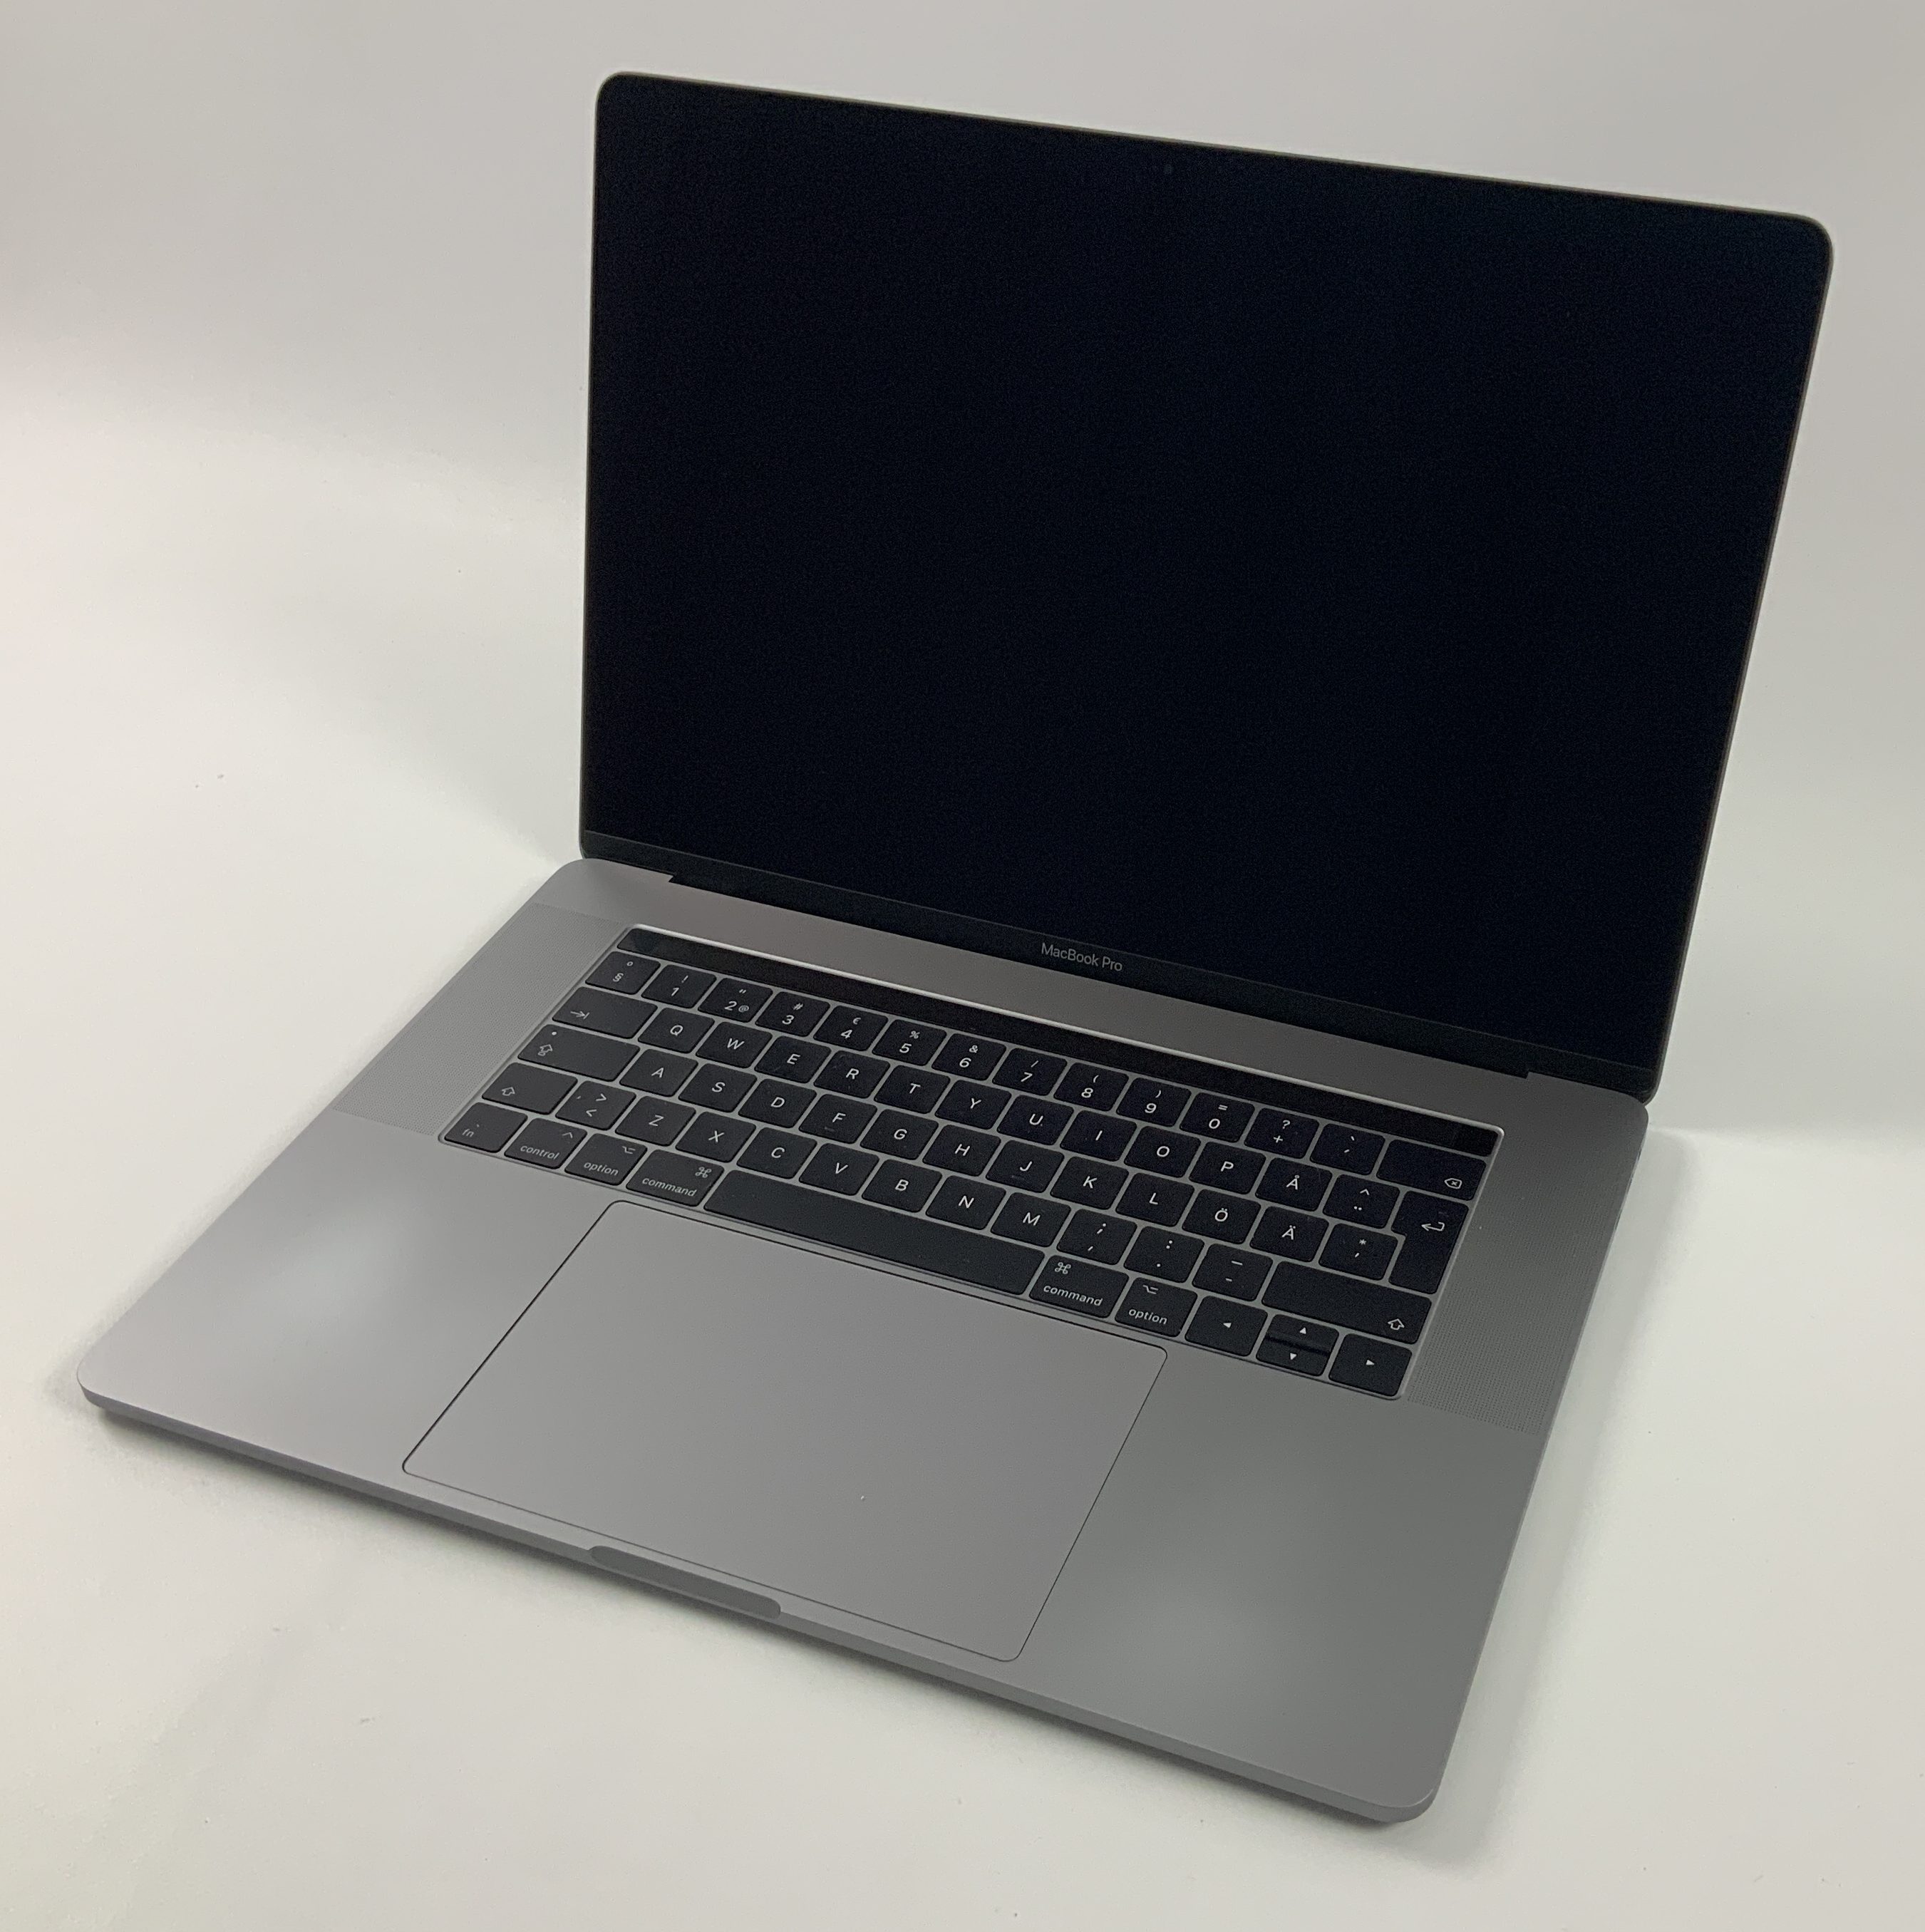 MacBook Pro 15" Touch Bar Late 2016 (Intel Quad-Core i7 2.6 GHz 16 GB RAM 512 GB SSD), Space Gray, Intel Quad-Core i7 2.6 GHz, 16 GB RAM, 512 GB SSD, Bild 1